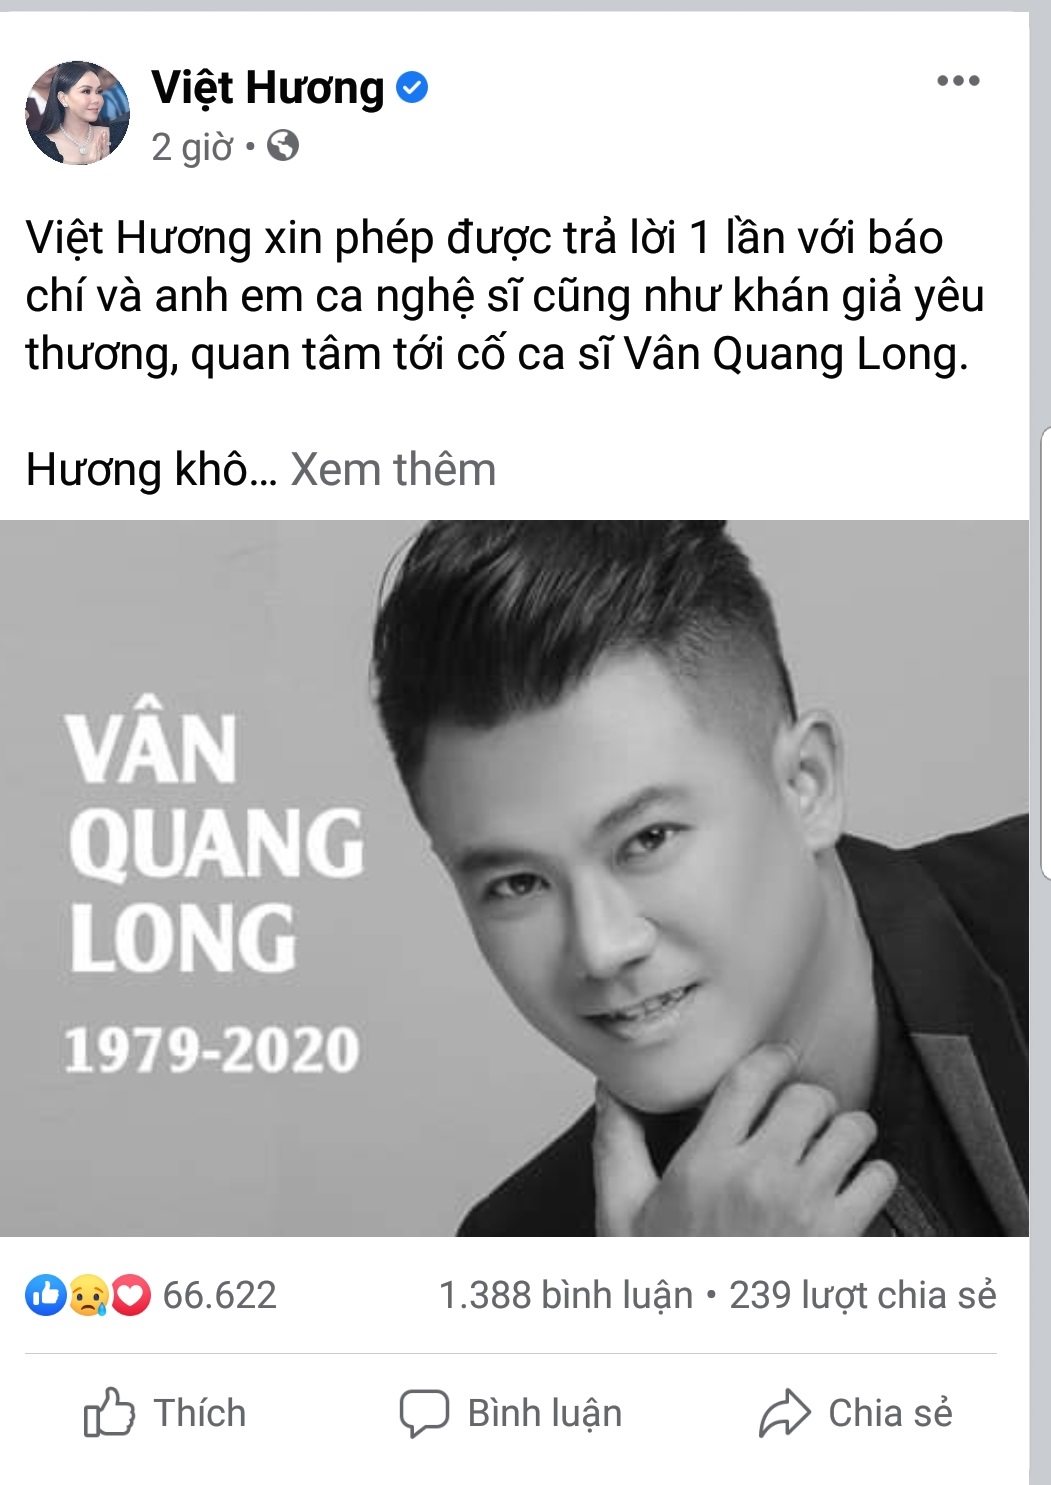 Việt Hương lên tiếng về việc được gia đình Vân Quang Long nhờ giúp đỡ - Ảnh 1